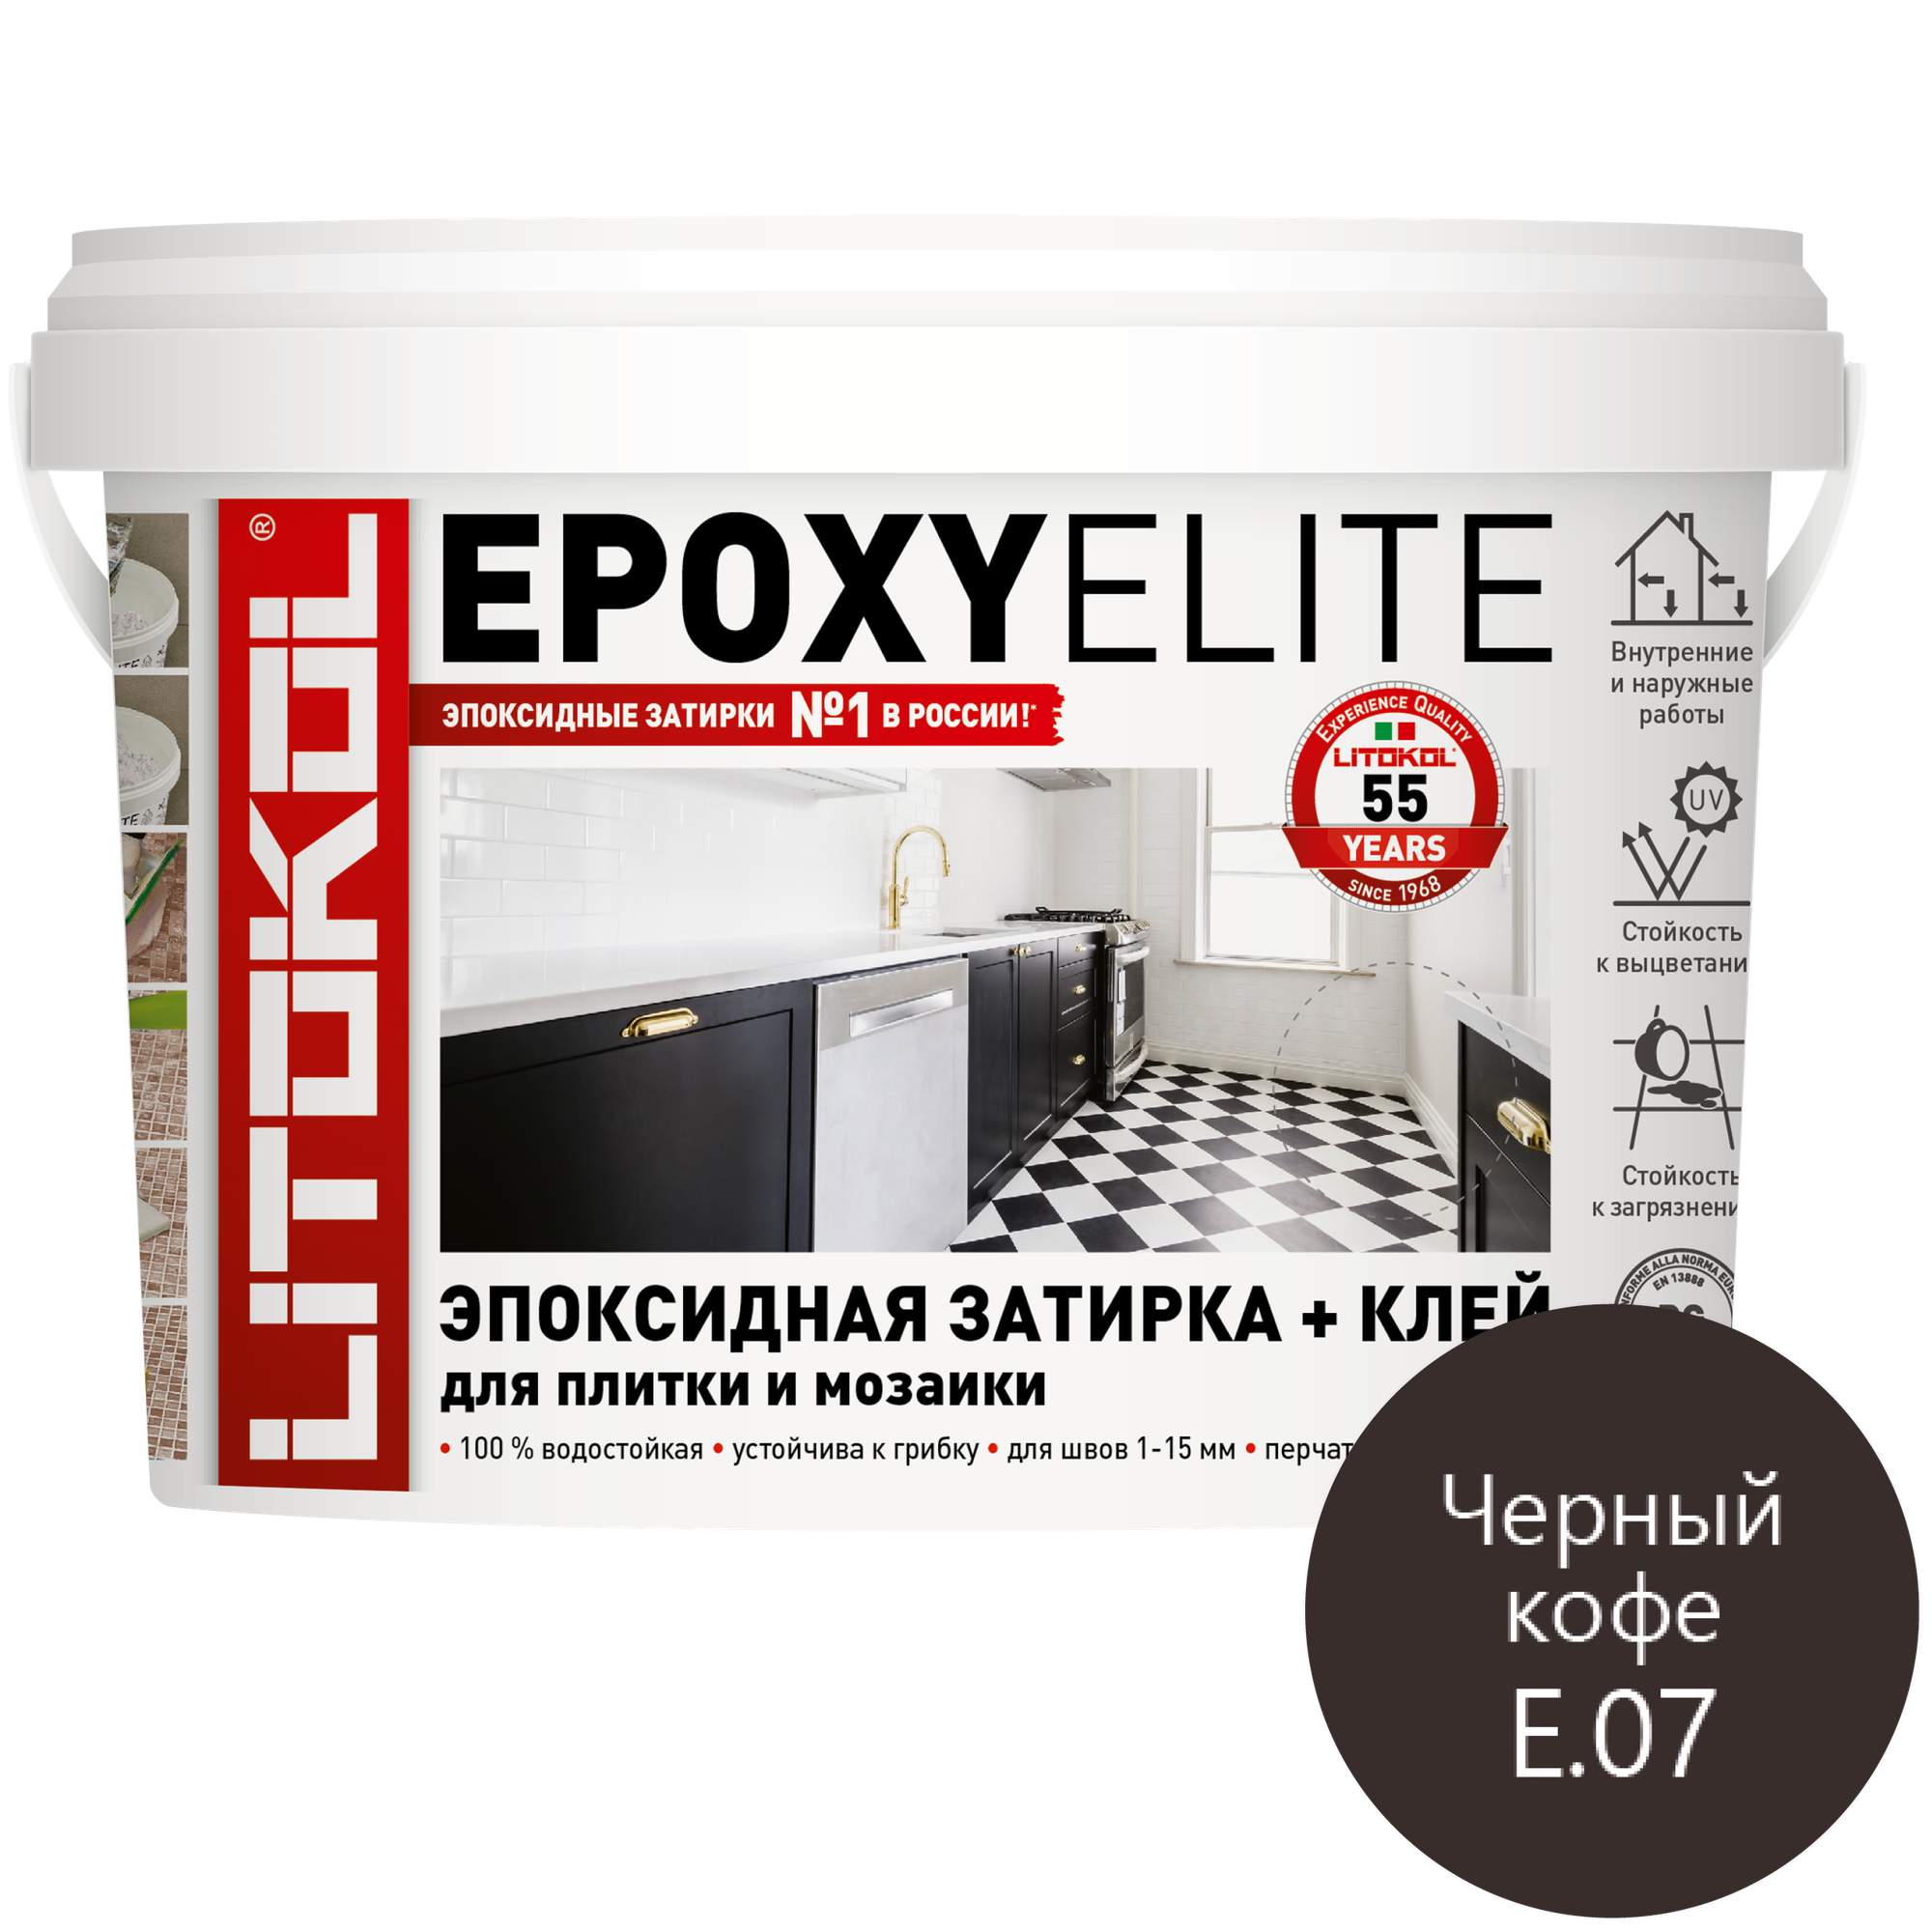 Затирка Litokol EpoxyElite, 1 кг, Е.07 черный кофе - фотография № 8